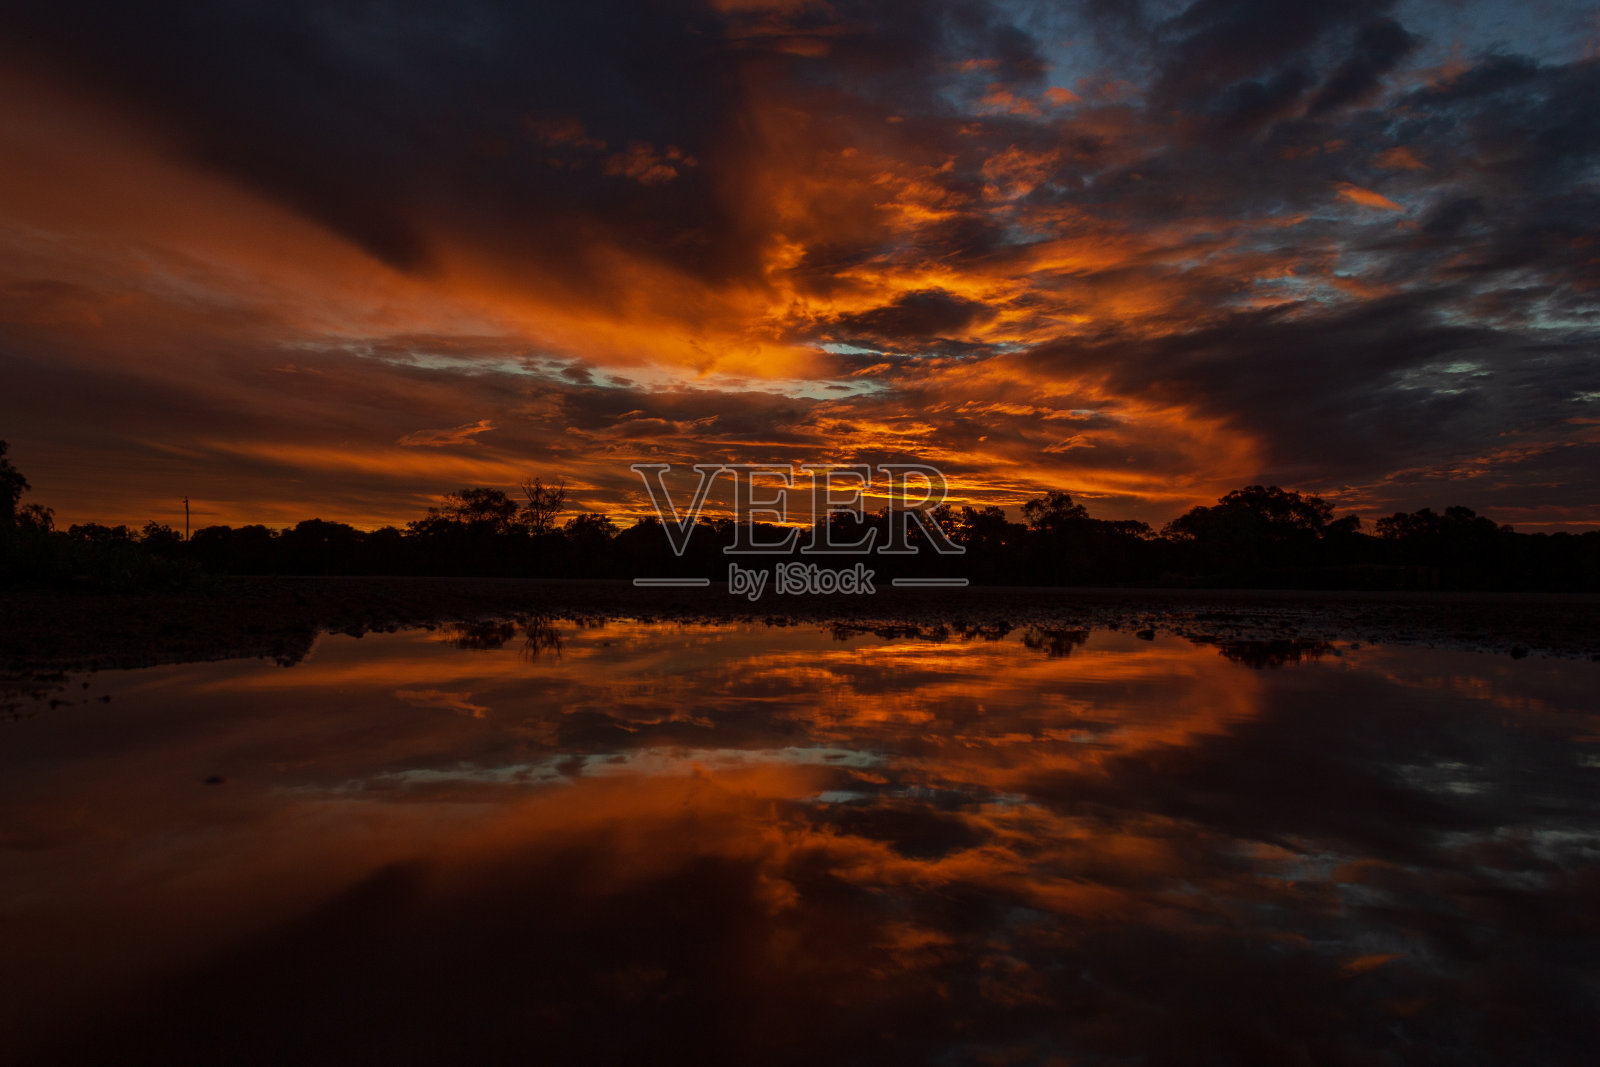 澳大利亚昆士兰州cloncurry北部200公里处的美丽日落全景照片摄影图片